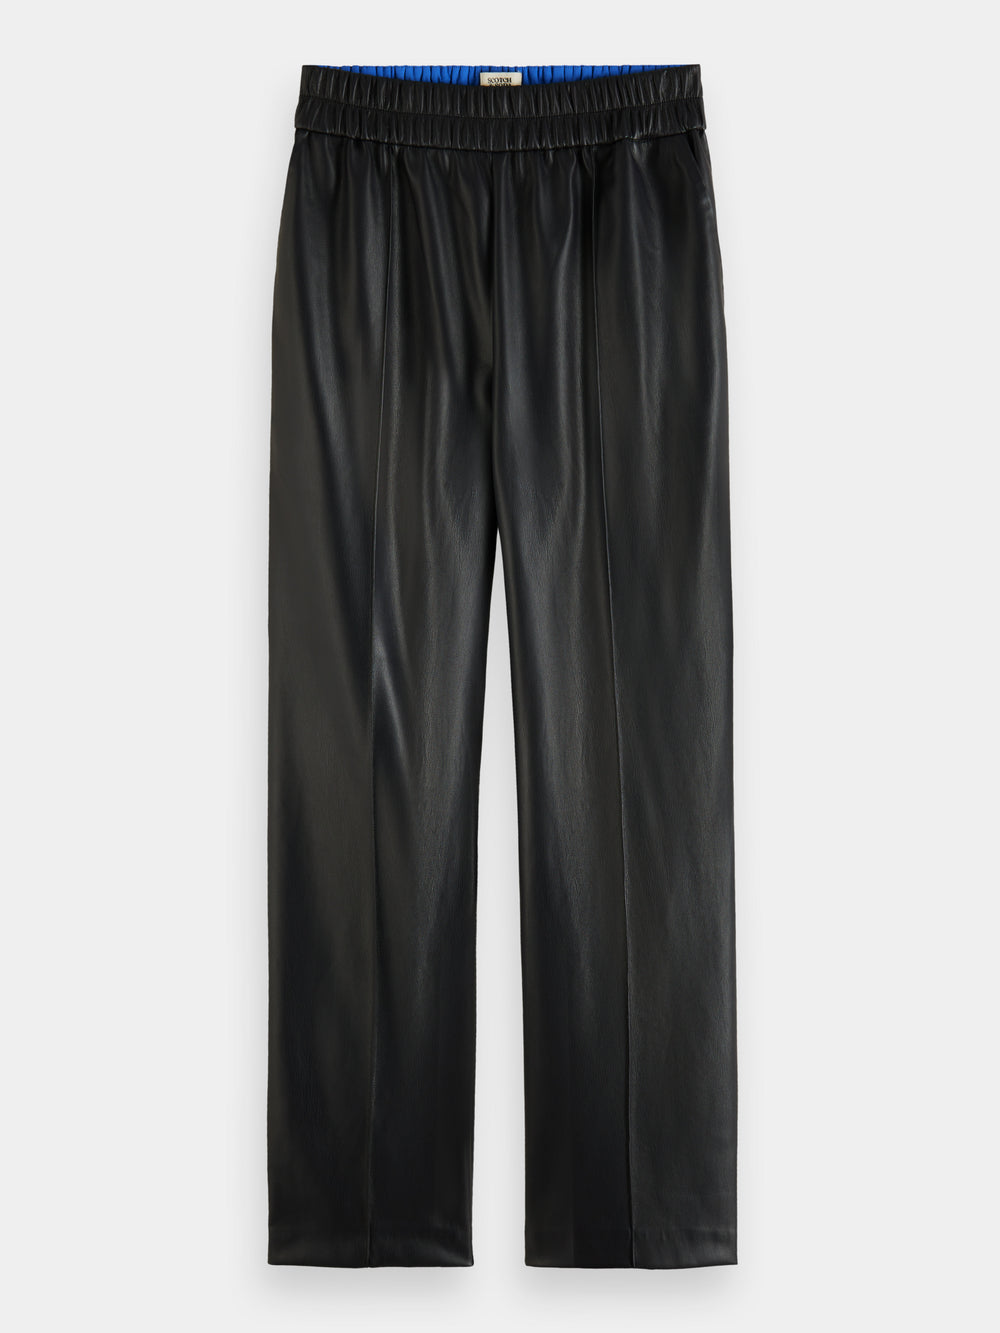 Estelle faux leather jogger pants - Scotch & Soda AU